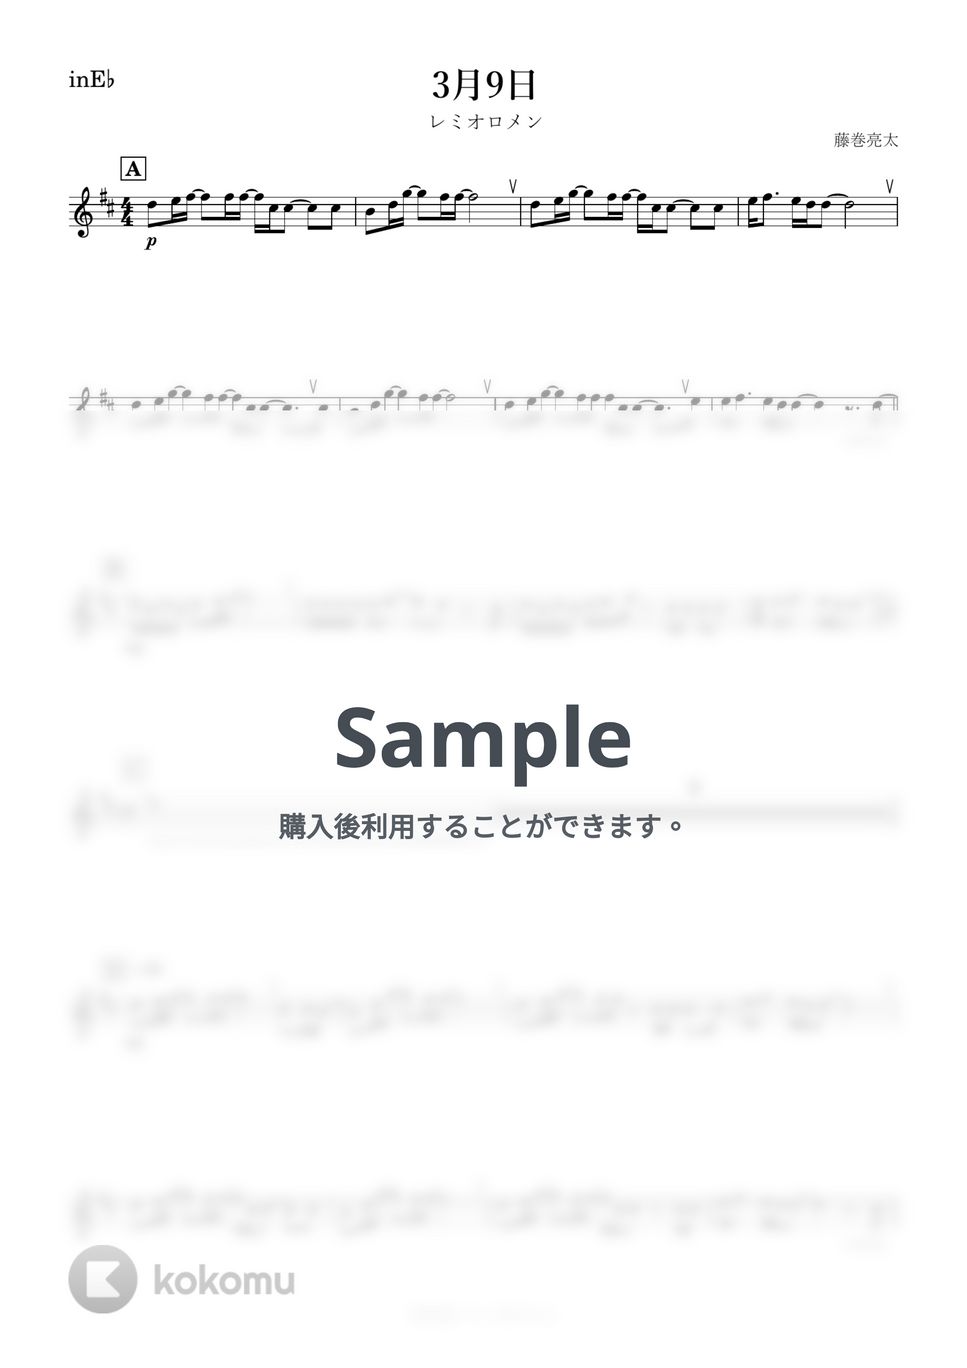 レミオロメン - 3月9日 (E♭) by kanamusic